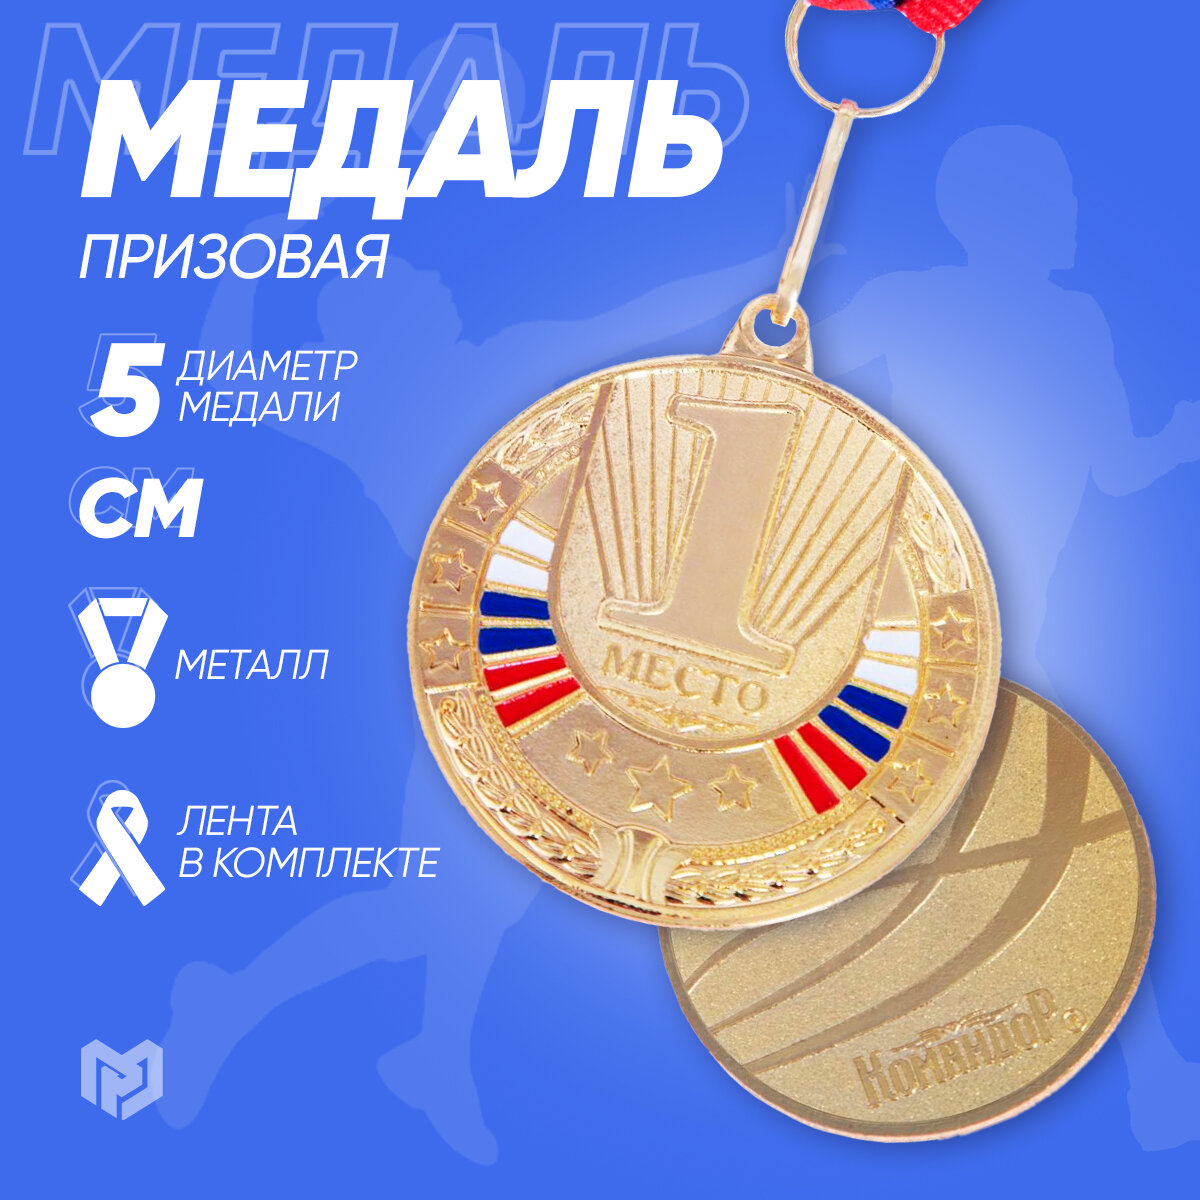 Медаль наградная призовая 1-е место, золотая с лентой, металл